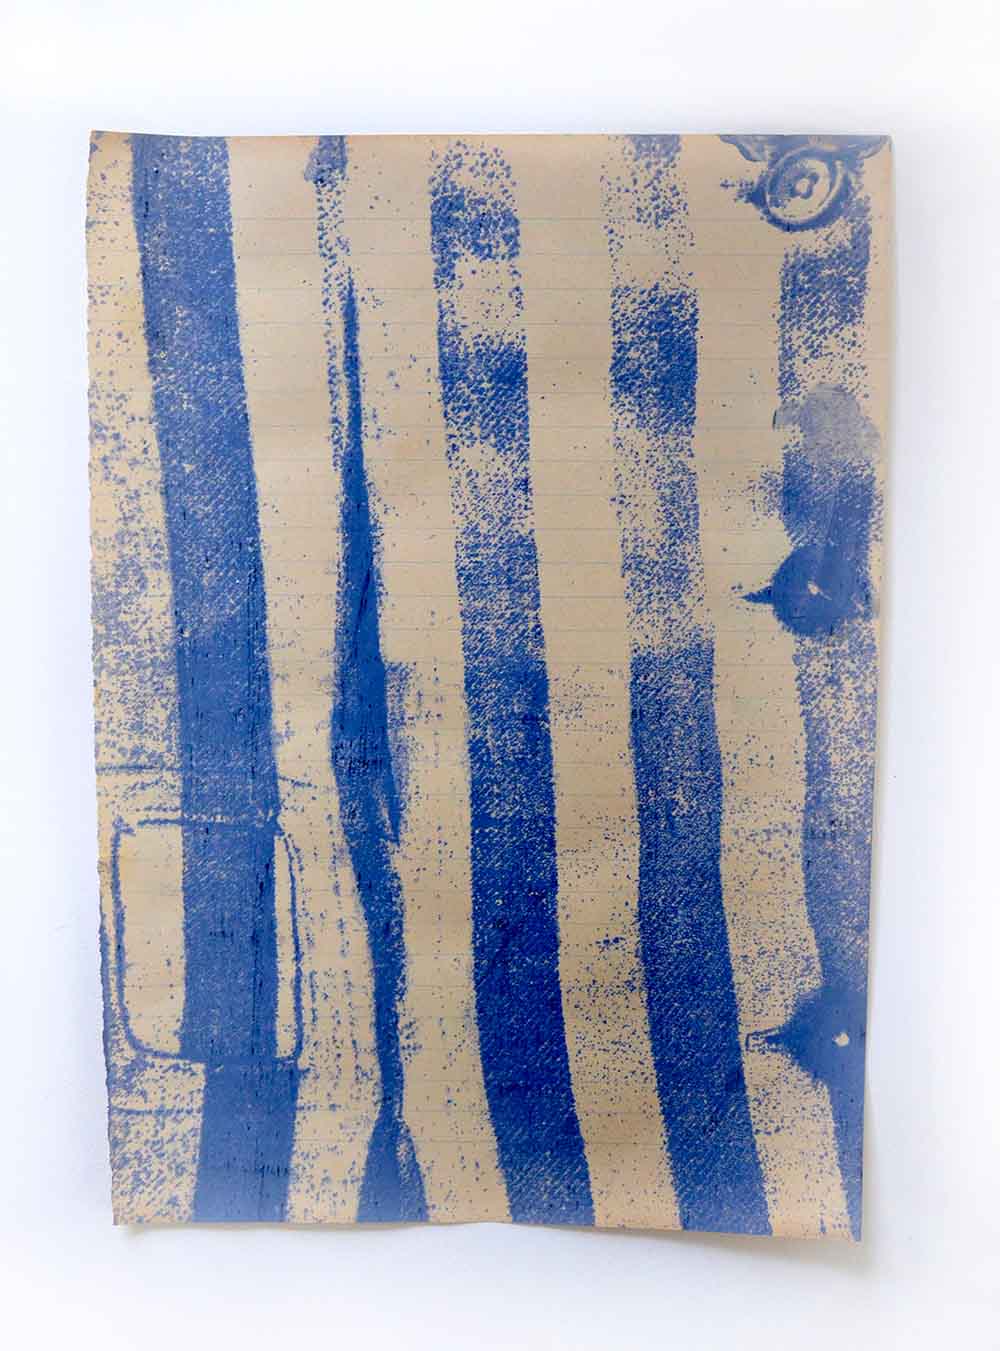 Das Gewand | 270 x 55 cm | Schafwolle, Stoff, Farbe, Papier | 2021